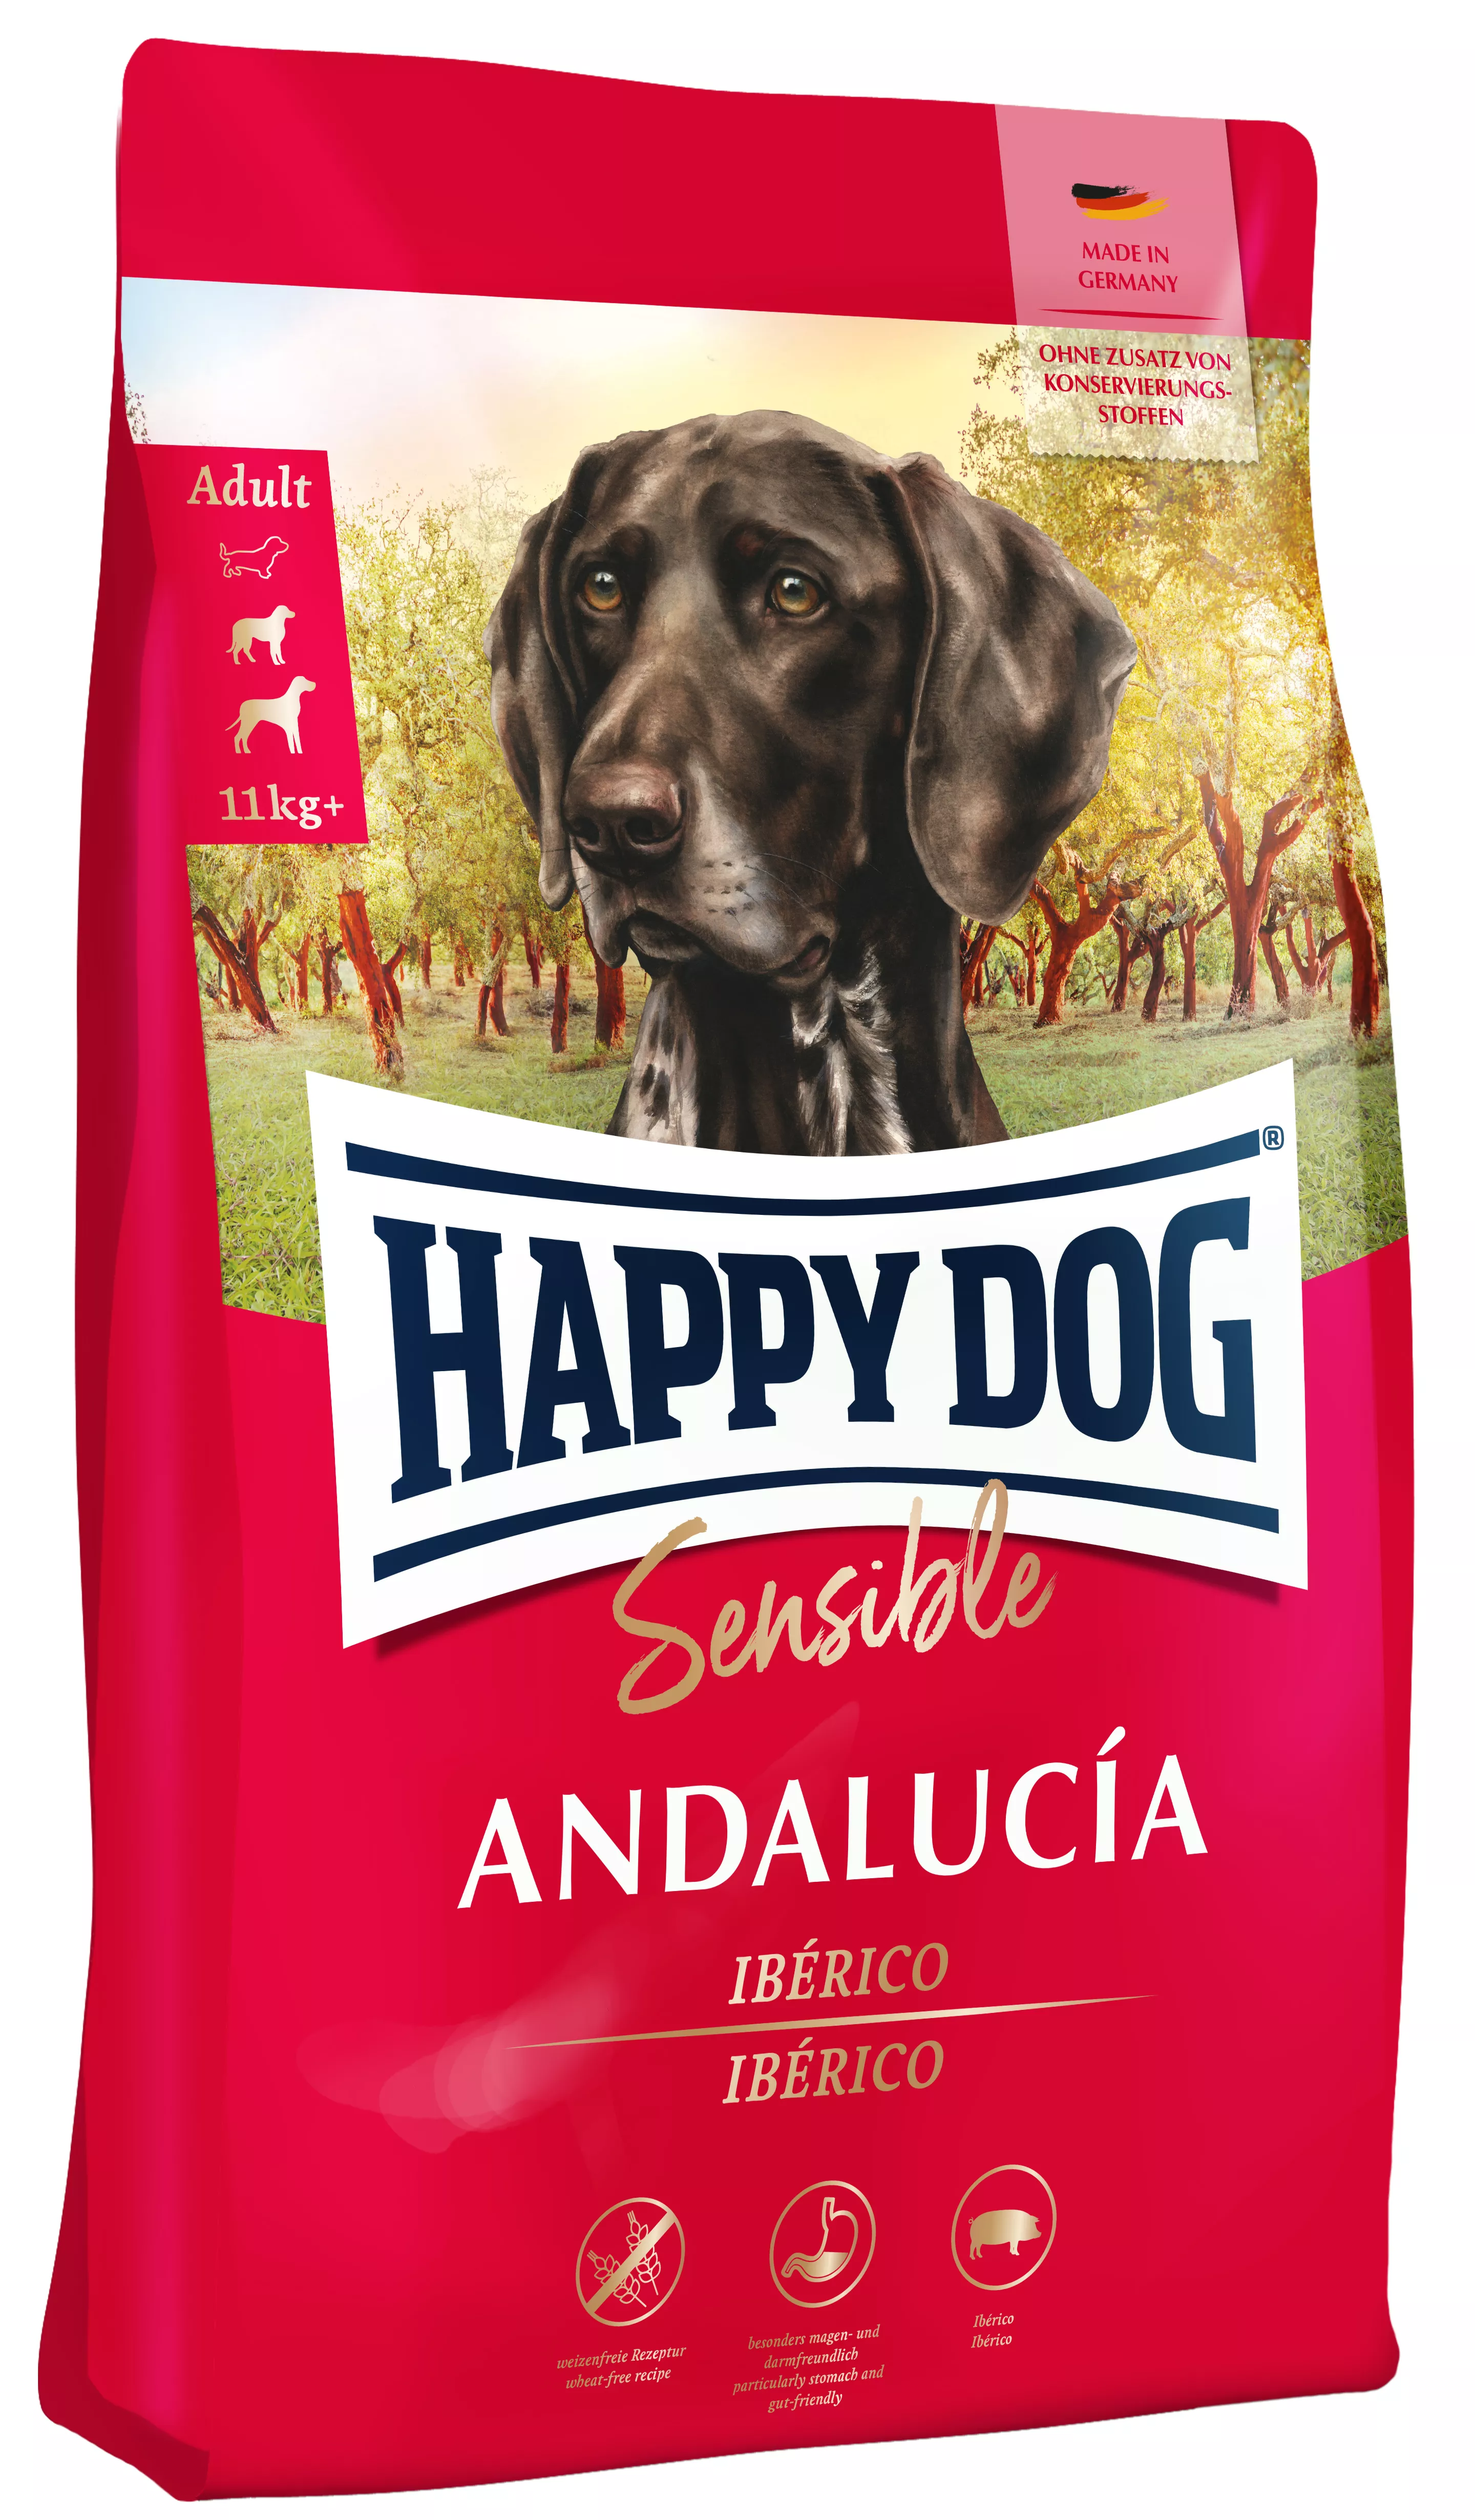 Happy Dog Sensible Andalucía 1 kg 